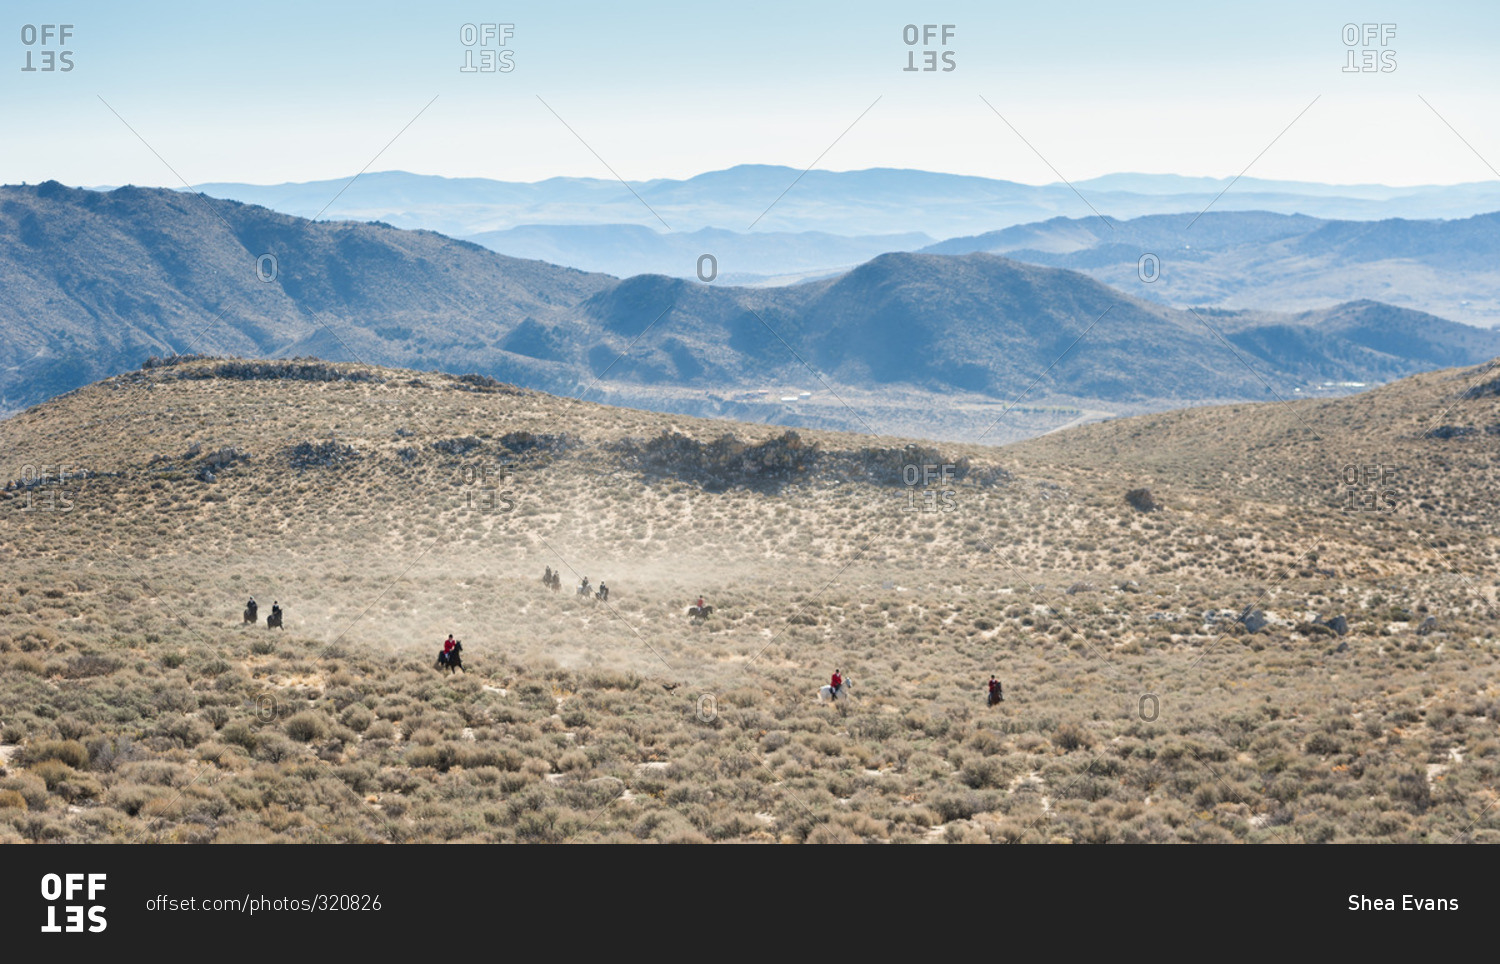 View of fox hunt in distance in Nevada desert